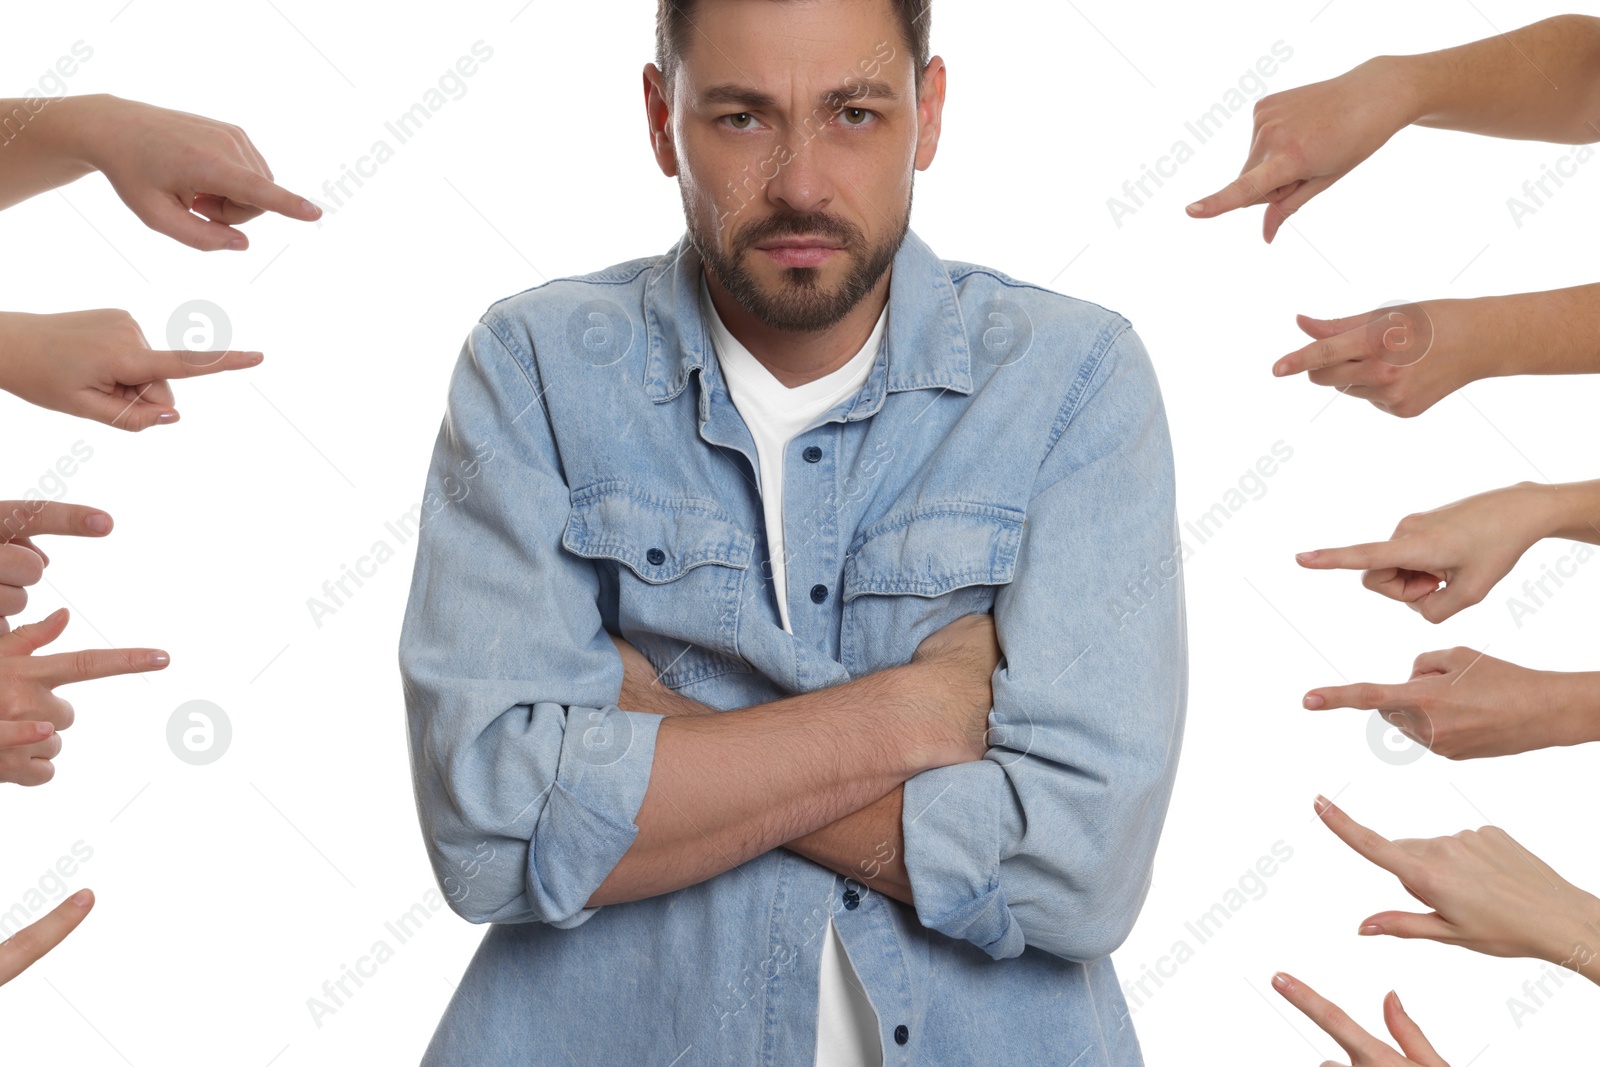 Photo of People bullying upset man on white background